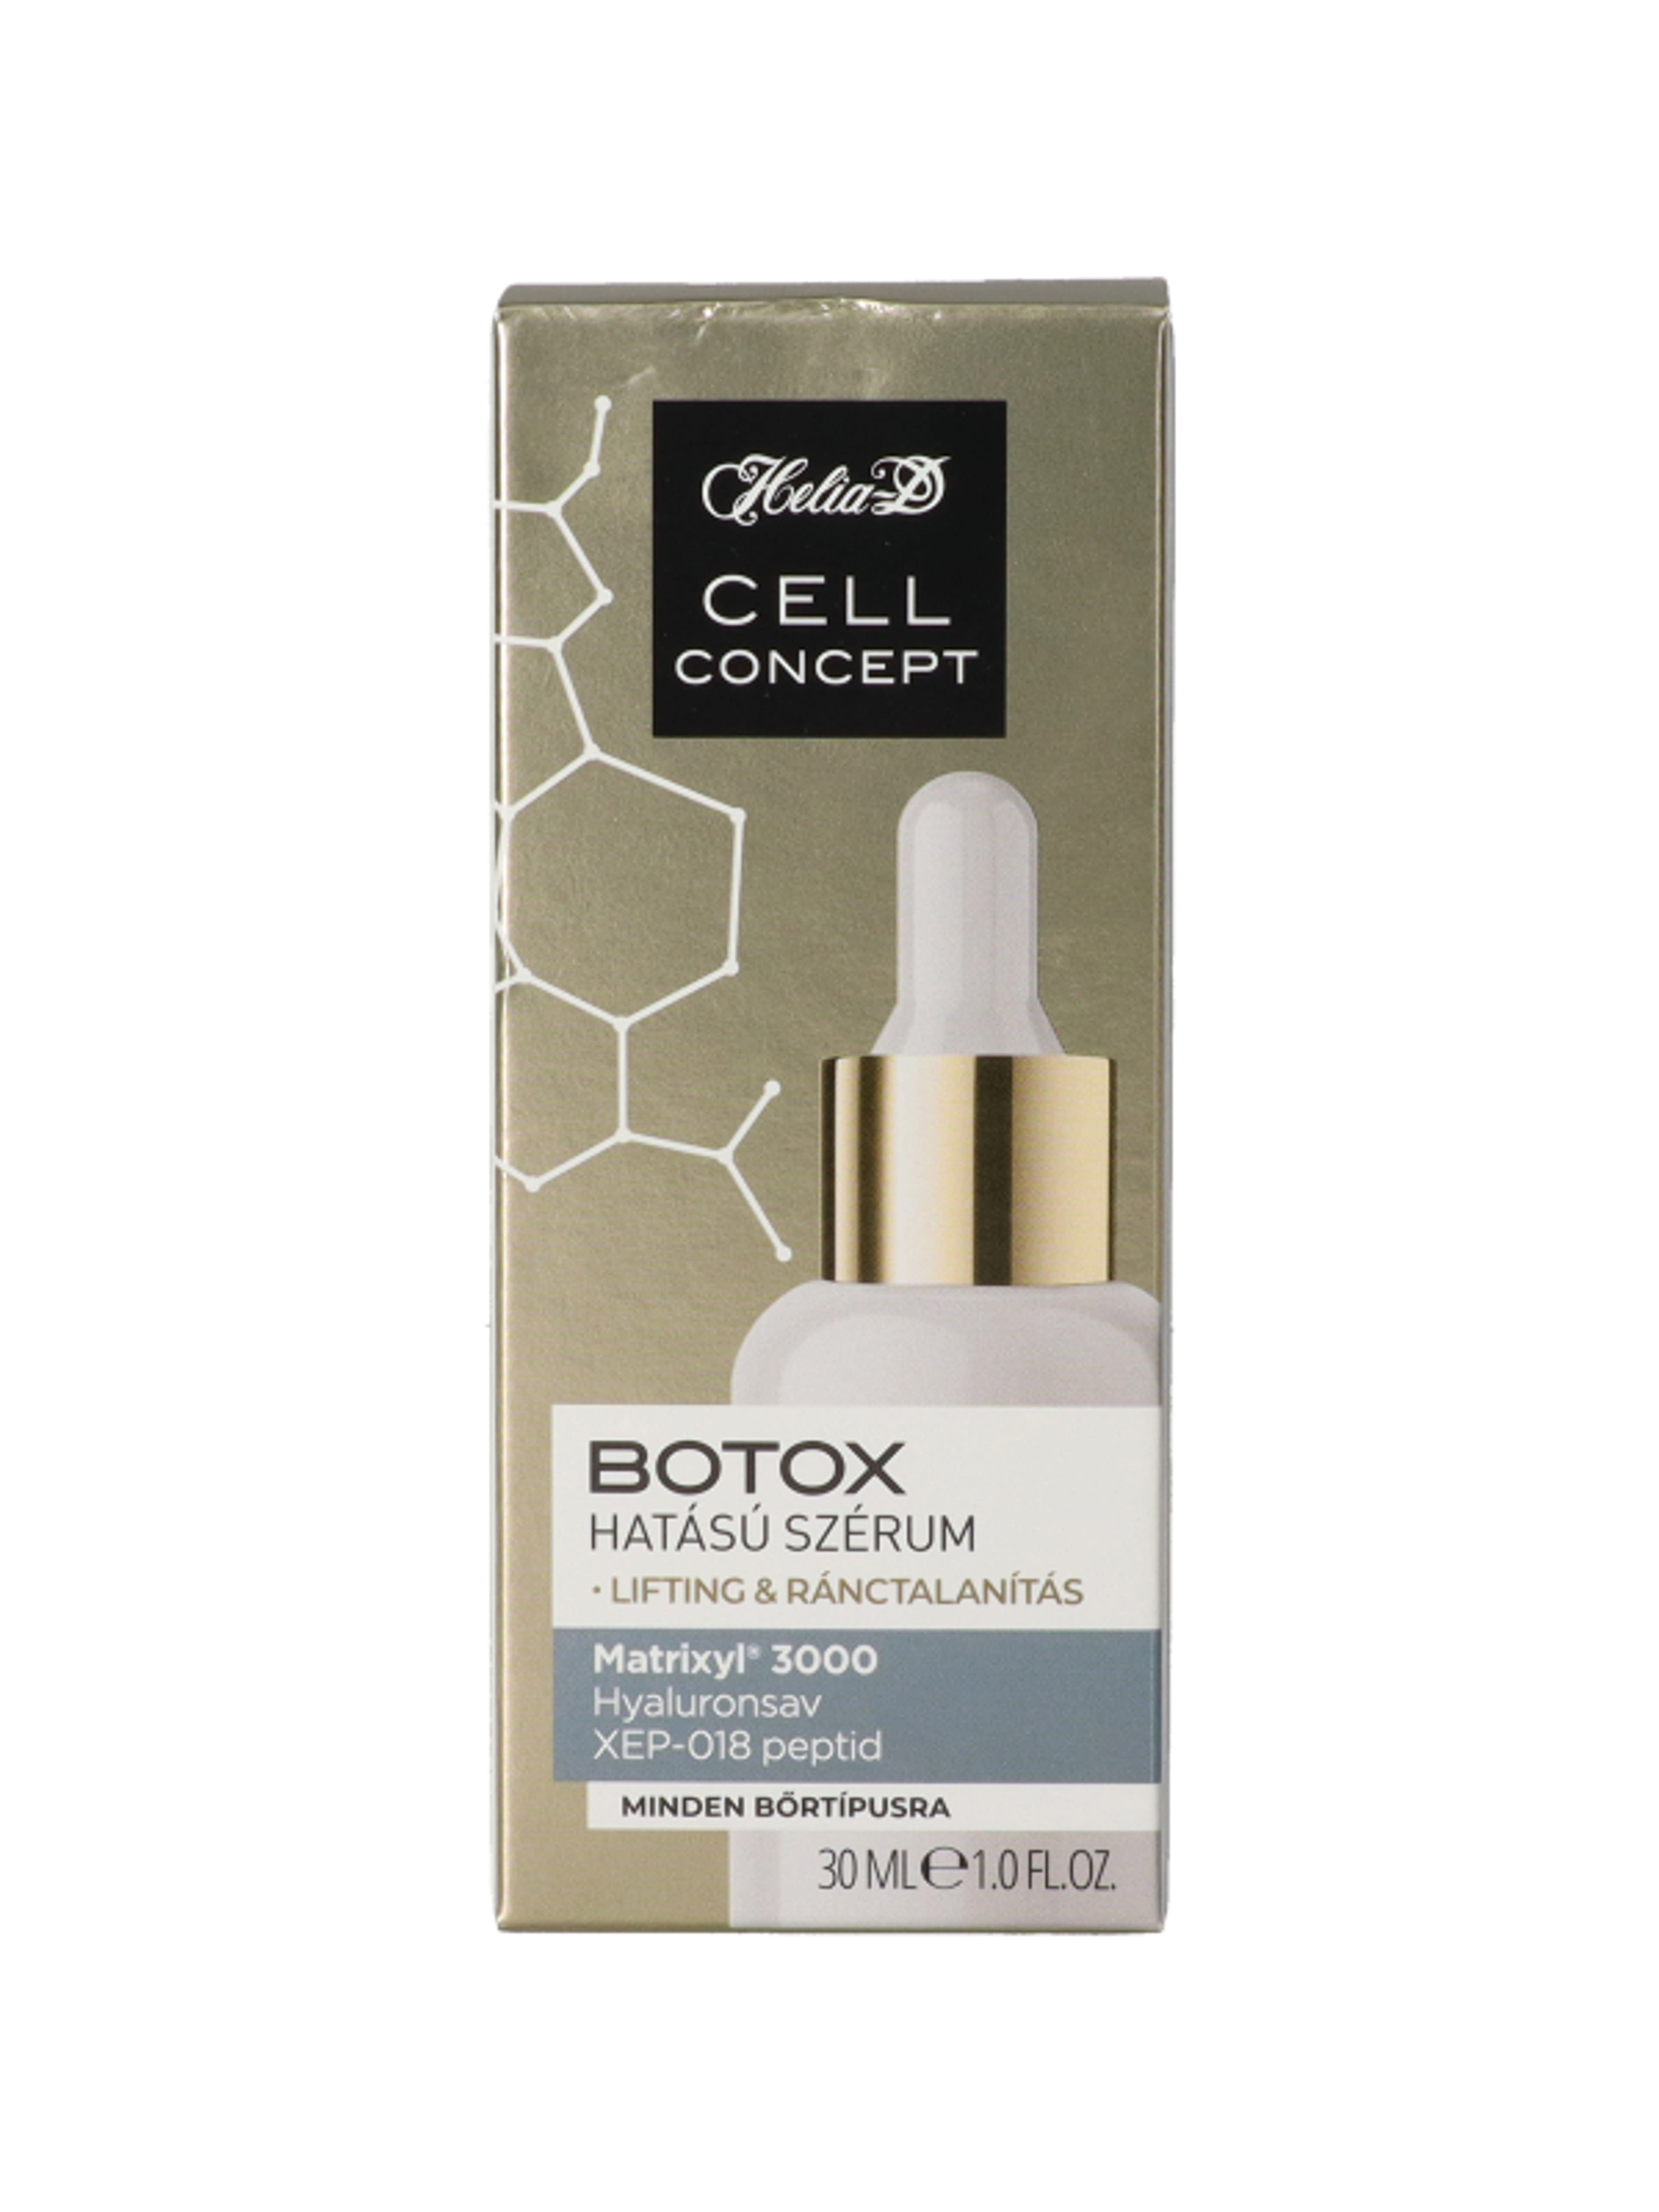 Helia-D Cell Concept Botox hatású szérum - 30 ml-1